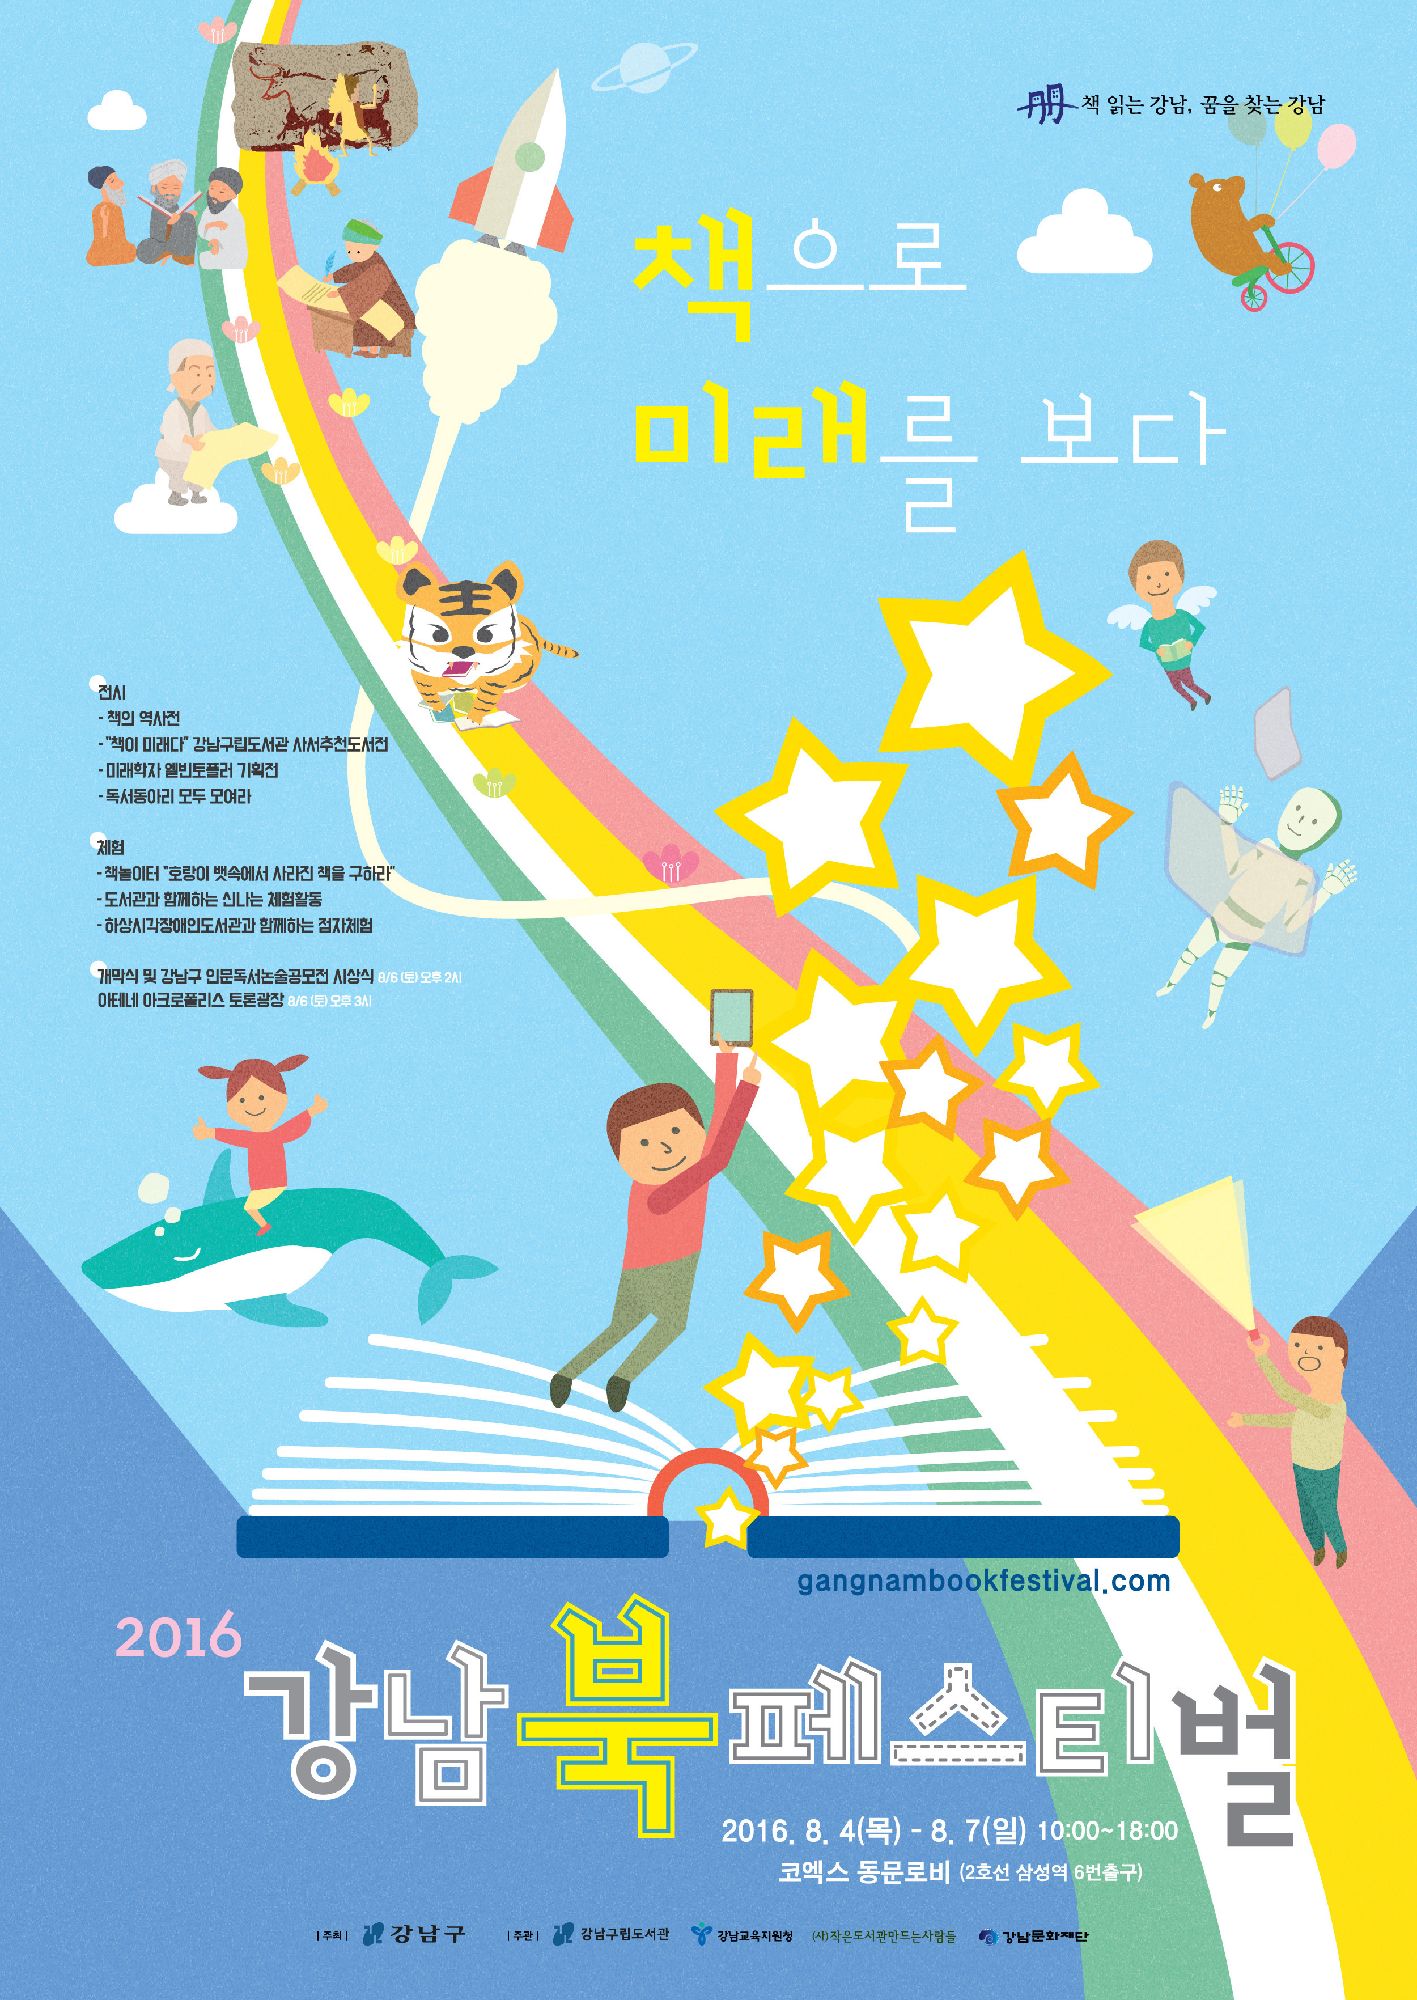  [강남구] 2016 강남북페스티벌 8/4(목)~8/7(일) 코엑스 포스터